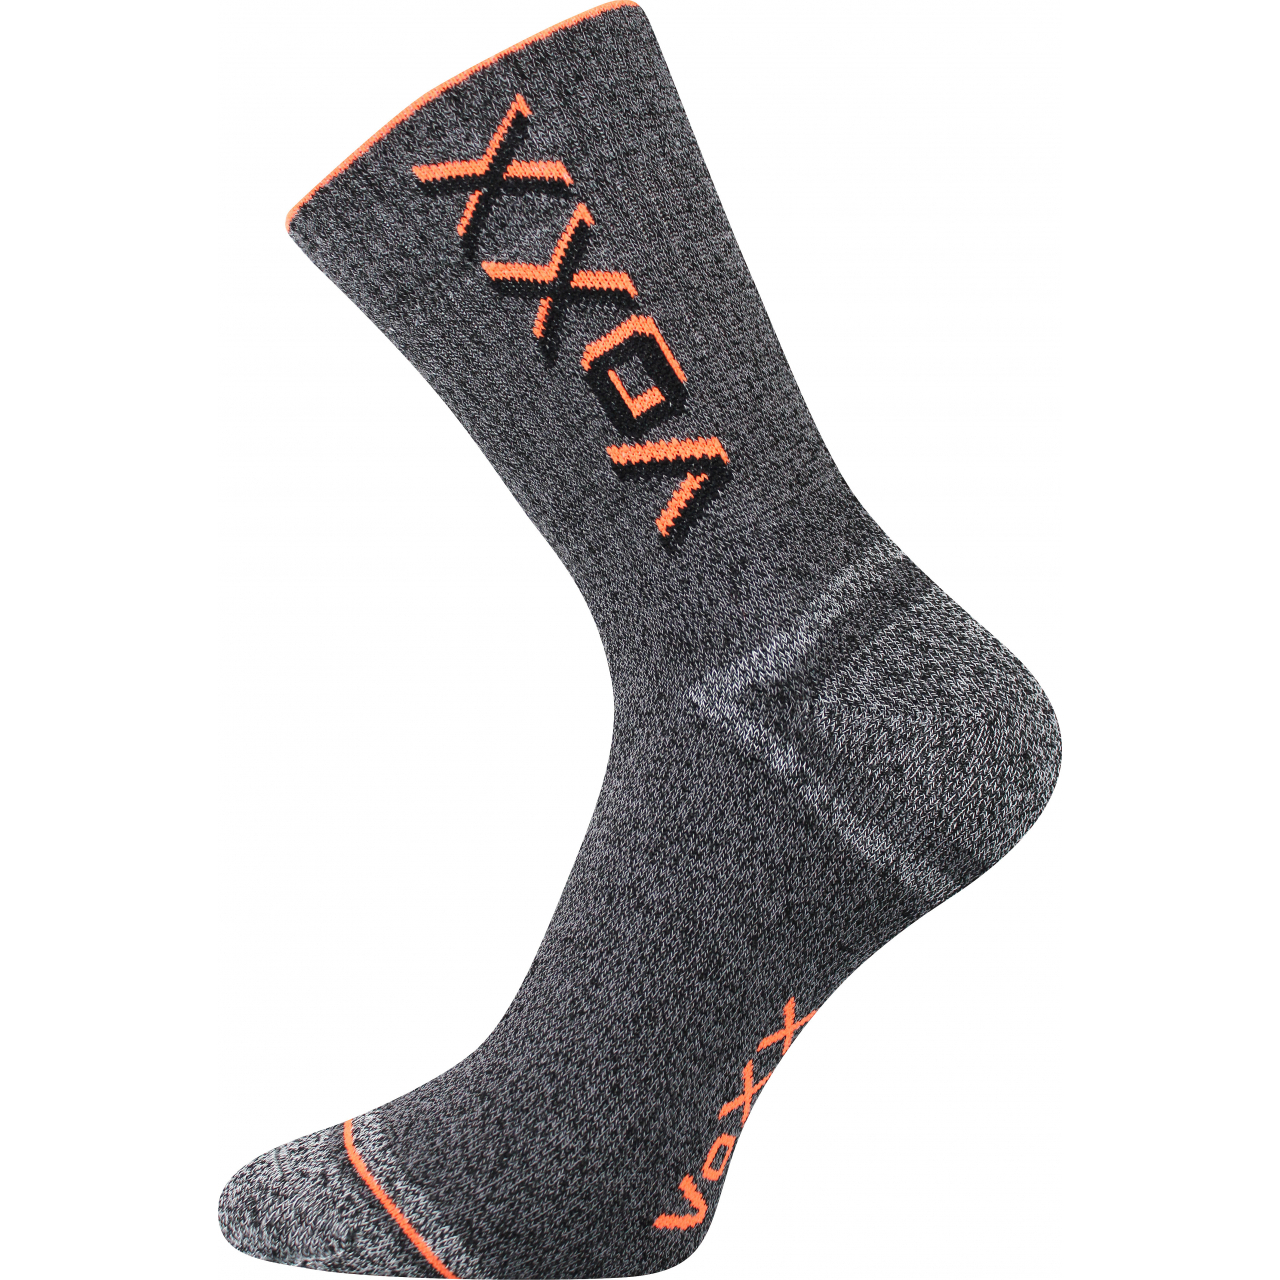 Ponožky unisex froté Voxx Hawk - šedé-oranžové, 39-42